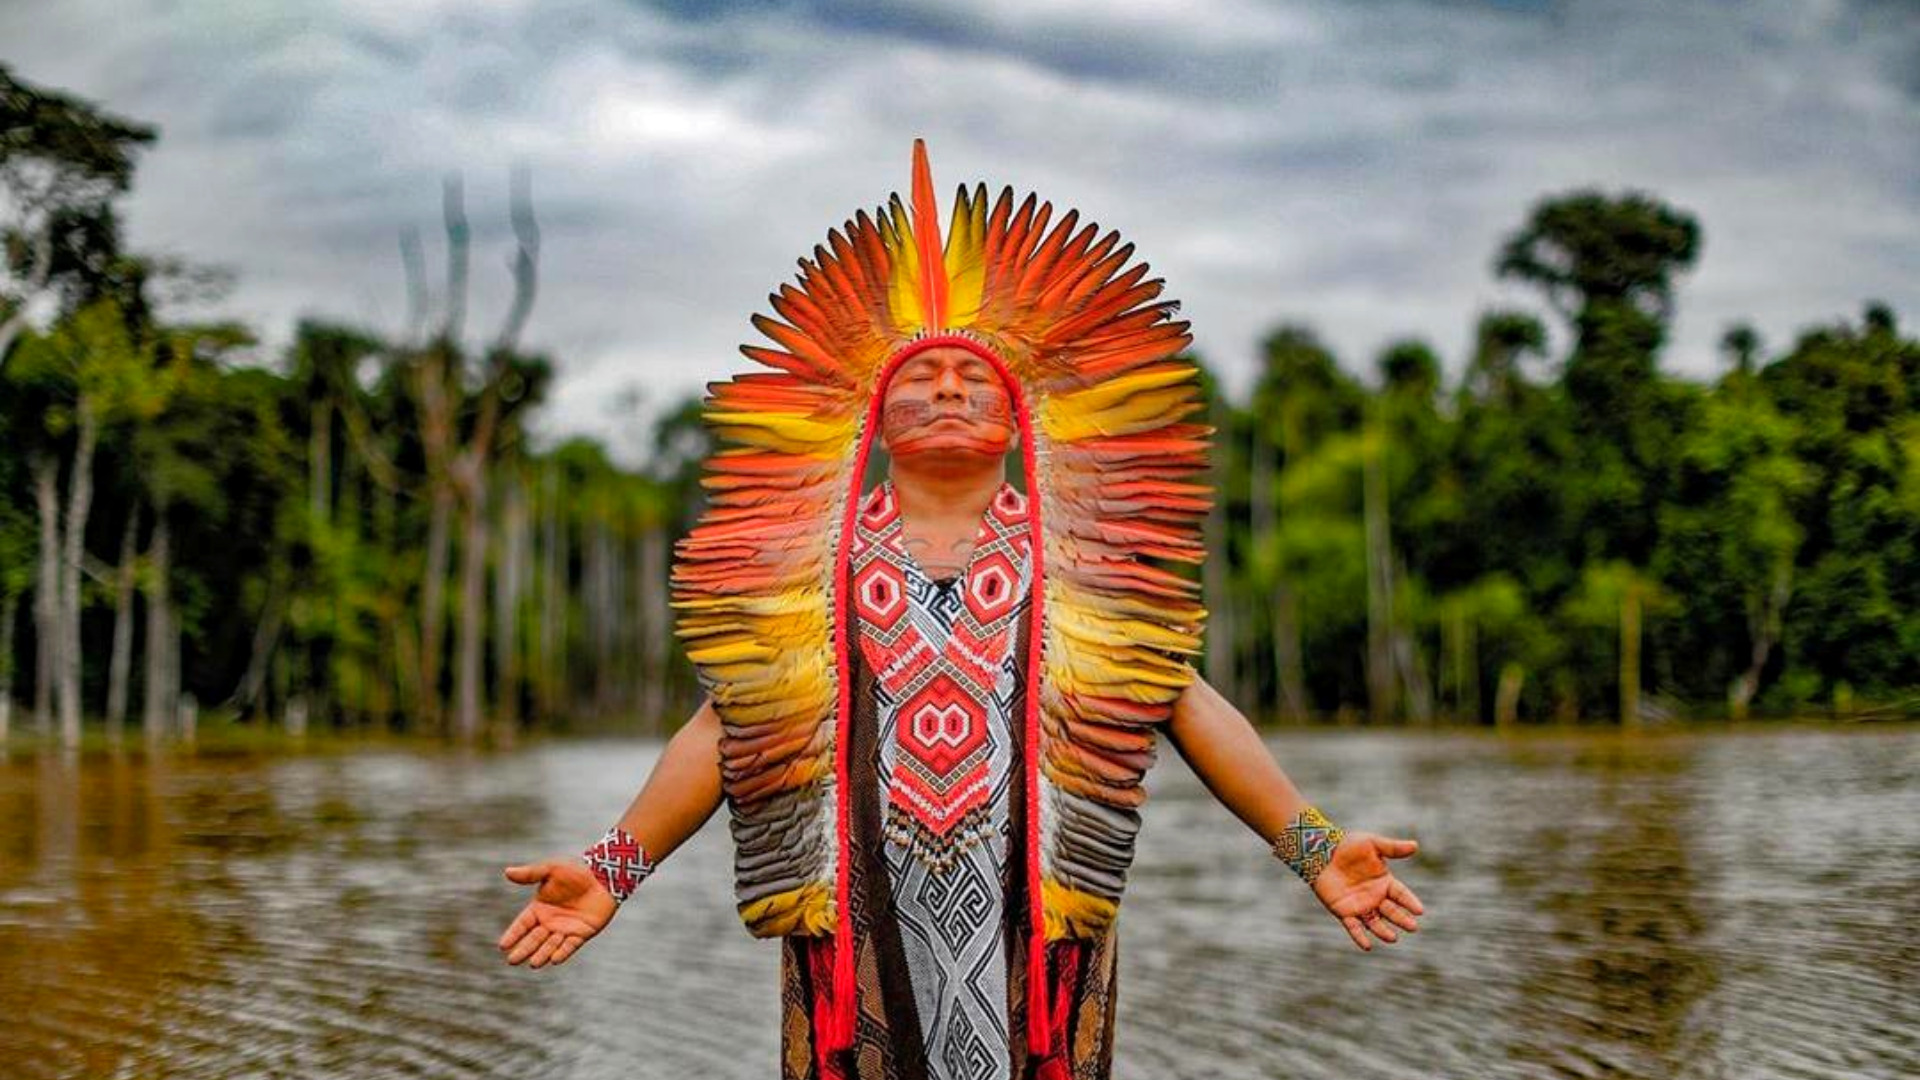 Foto: Ricardo Stuckert/Instagram | Os índios atravessaram a ponte